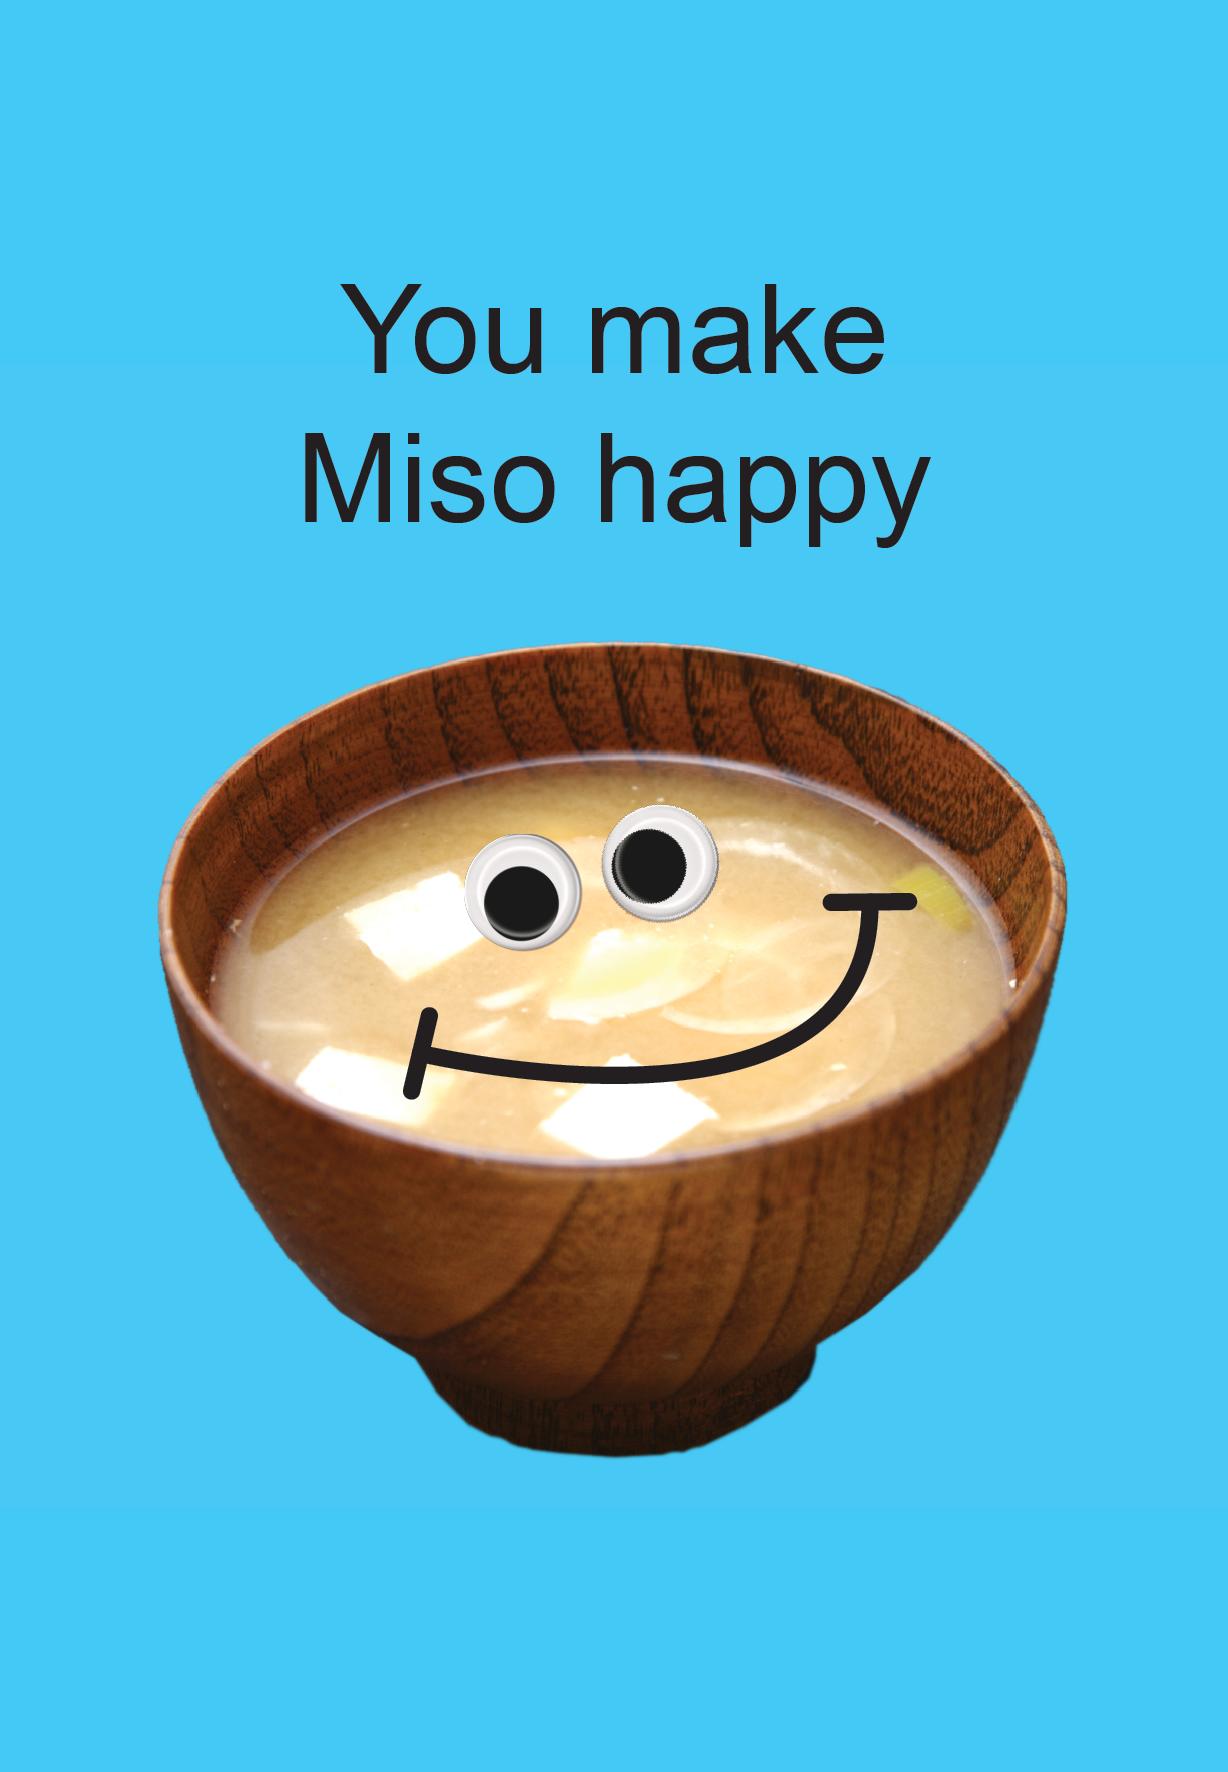 You make miso happy